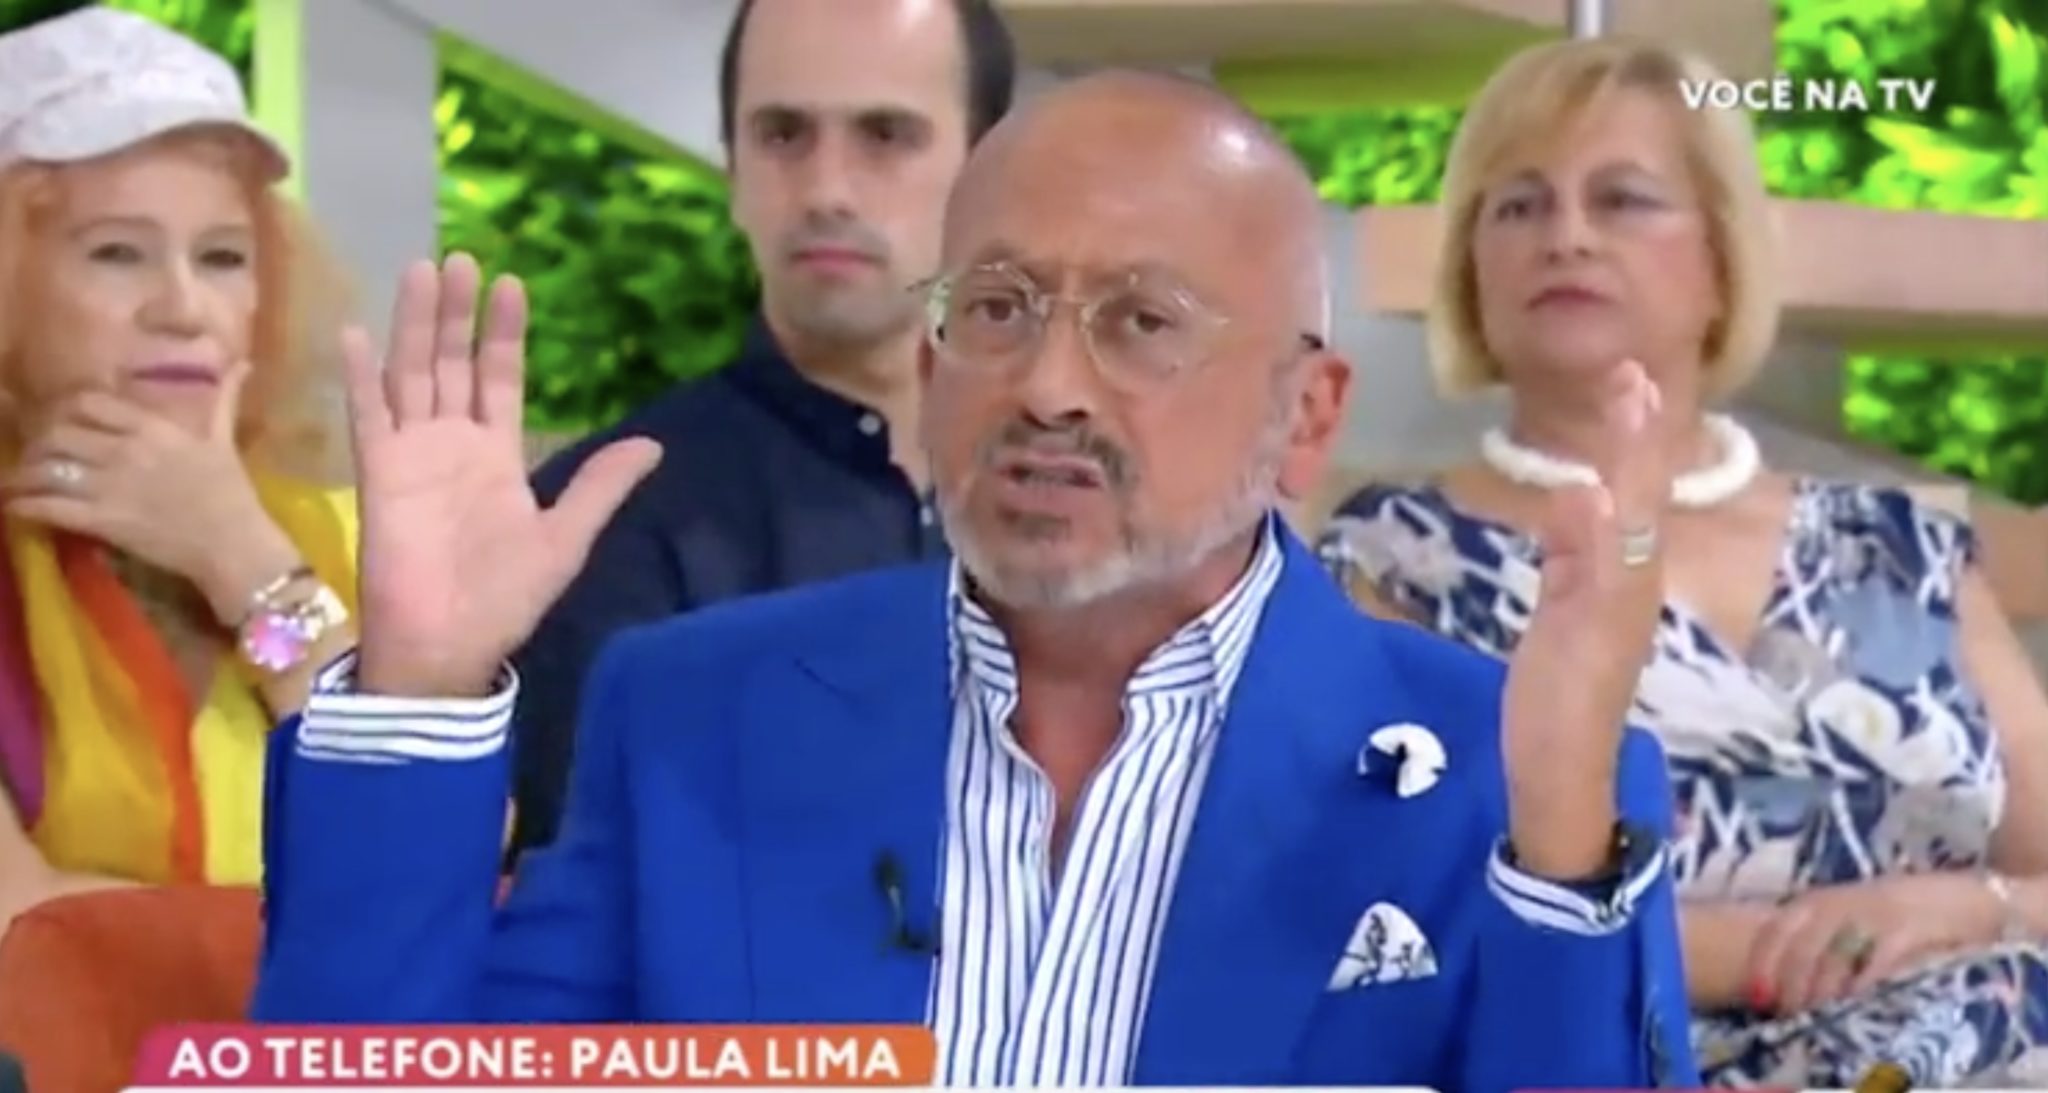 Manuel Luis Goucha Voce Na Tv &Quot;Calma!&Quot;: Goucha Exalta-Se Com Assistentes De 'Você Na Tv'